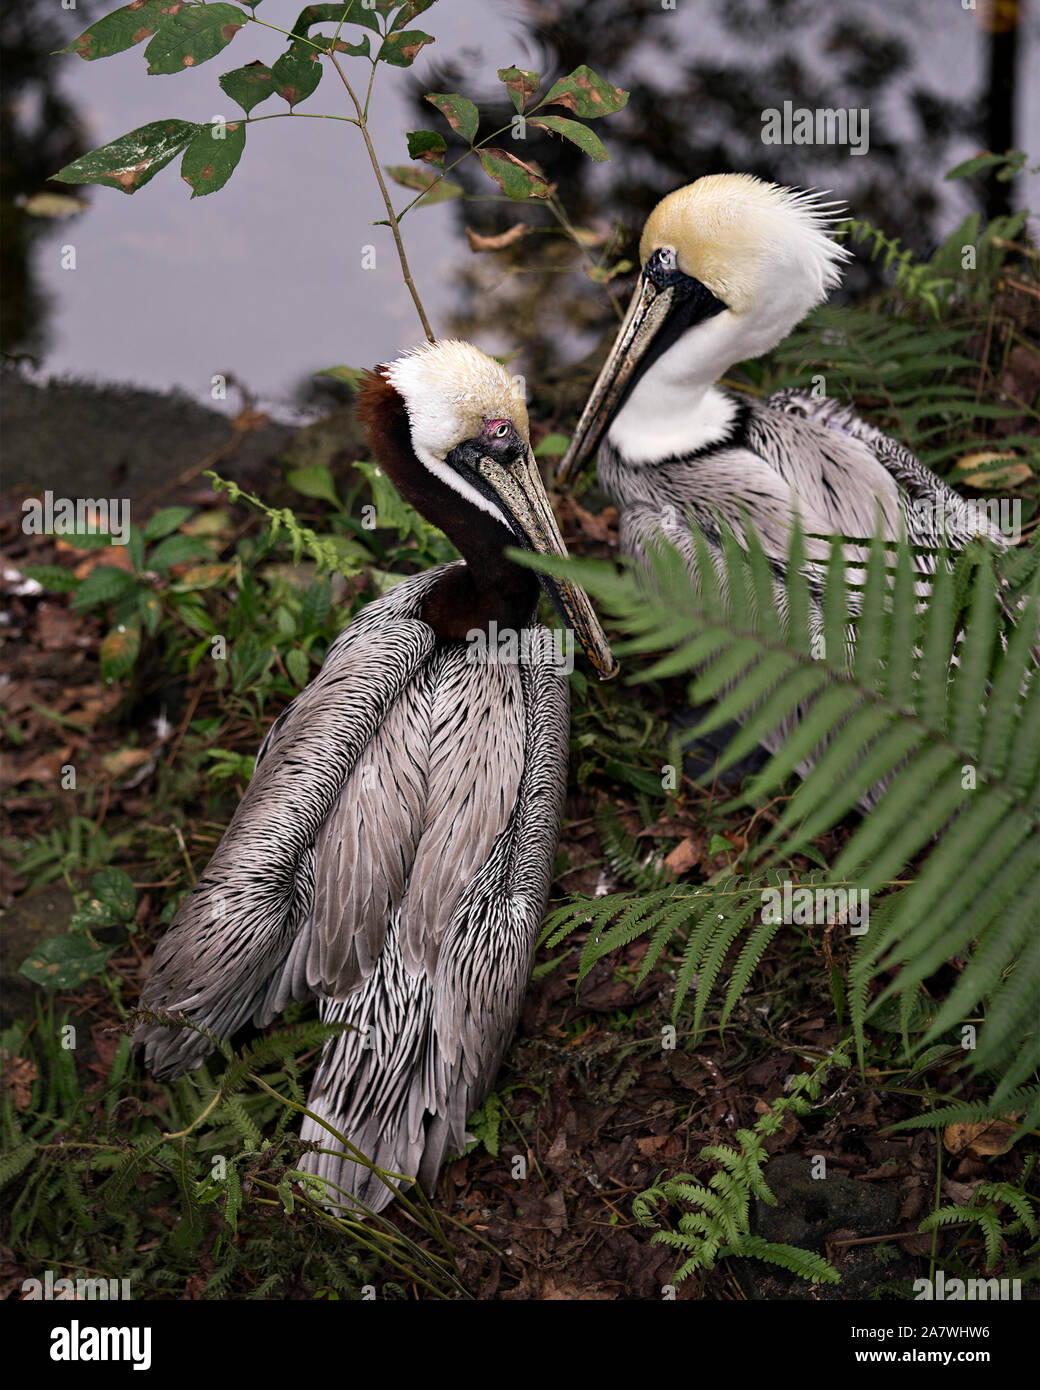 Brown pelican nach Paar mit einem Interaktion genießen das Leben in Ihre Umgebung und Umwelt während ihre Körper, Flügel, Augen, Kopf, Schnabel, p Stockfoto